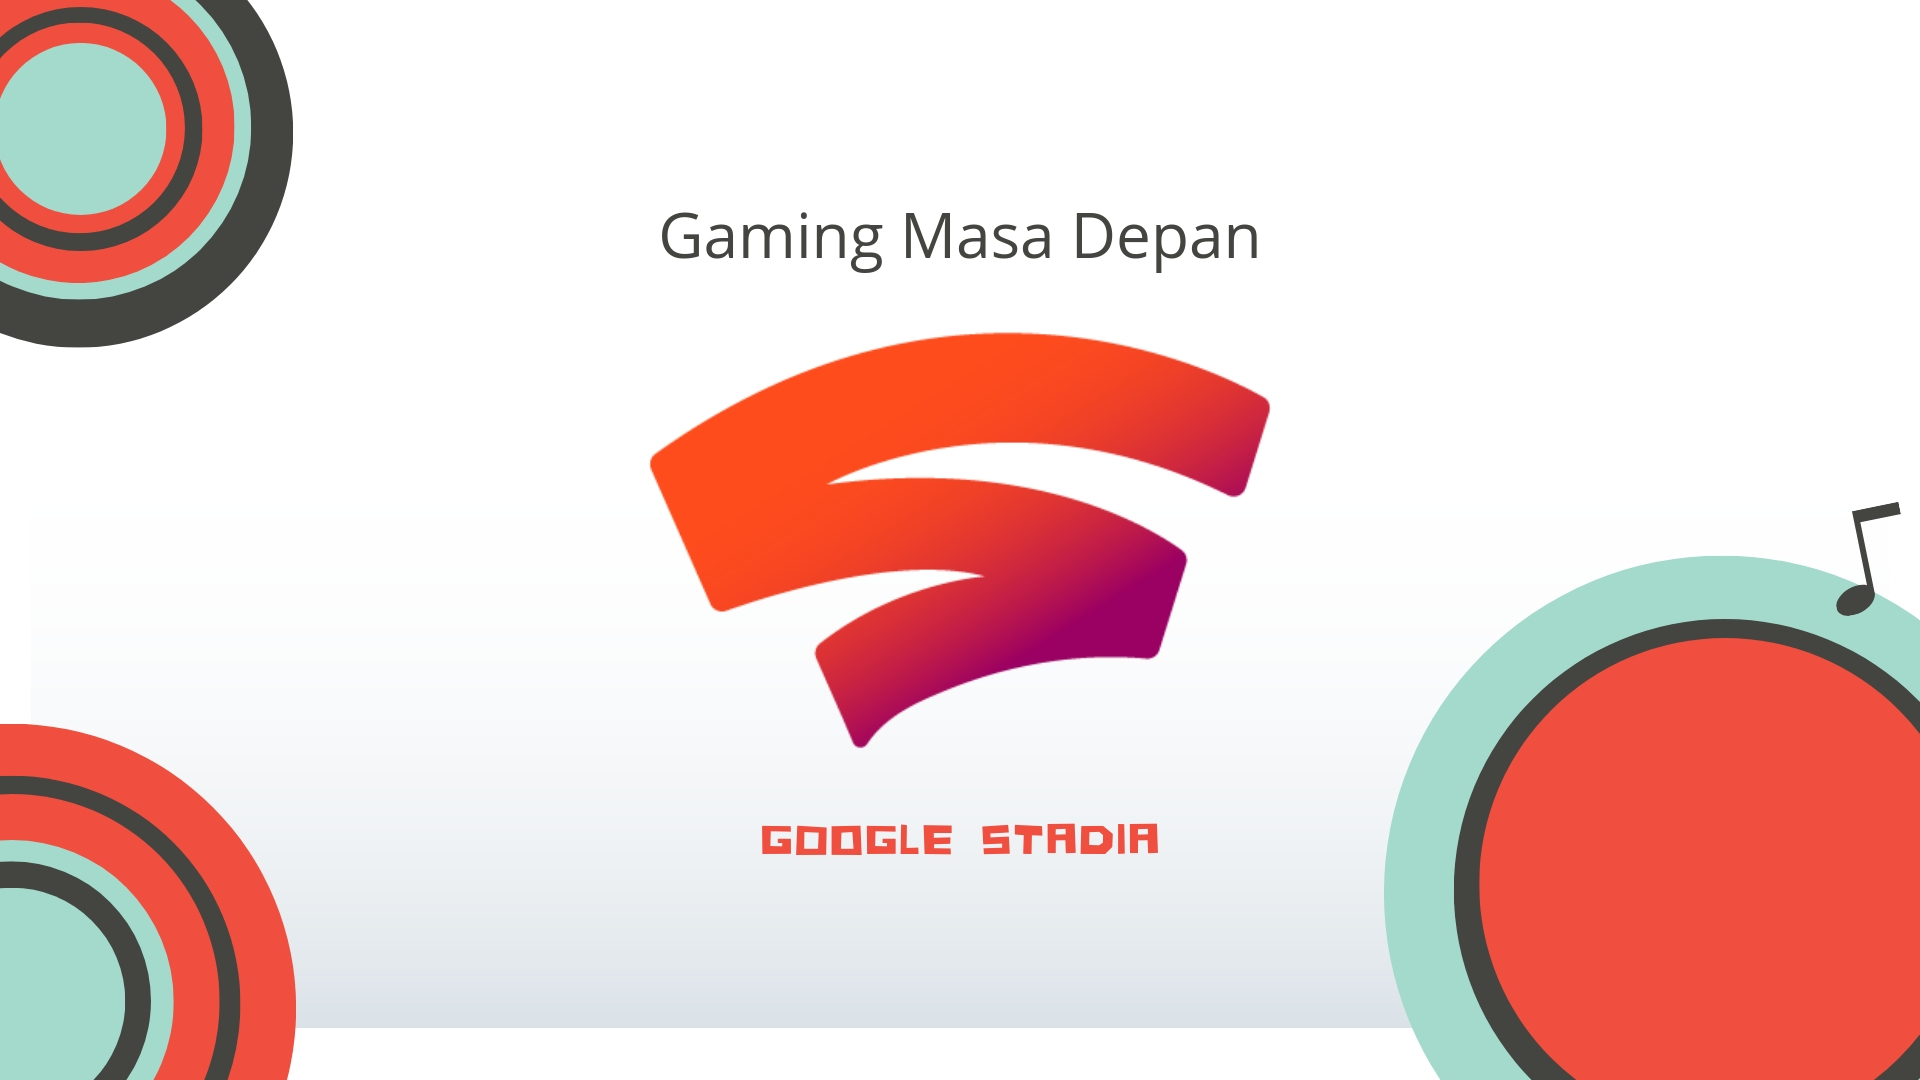 Google Stadia, pemain baru dari Google dalam industri gaming